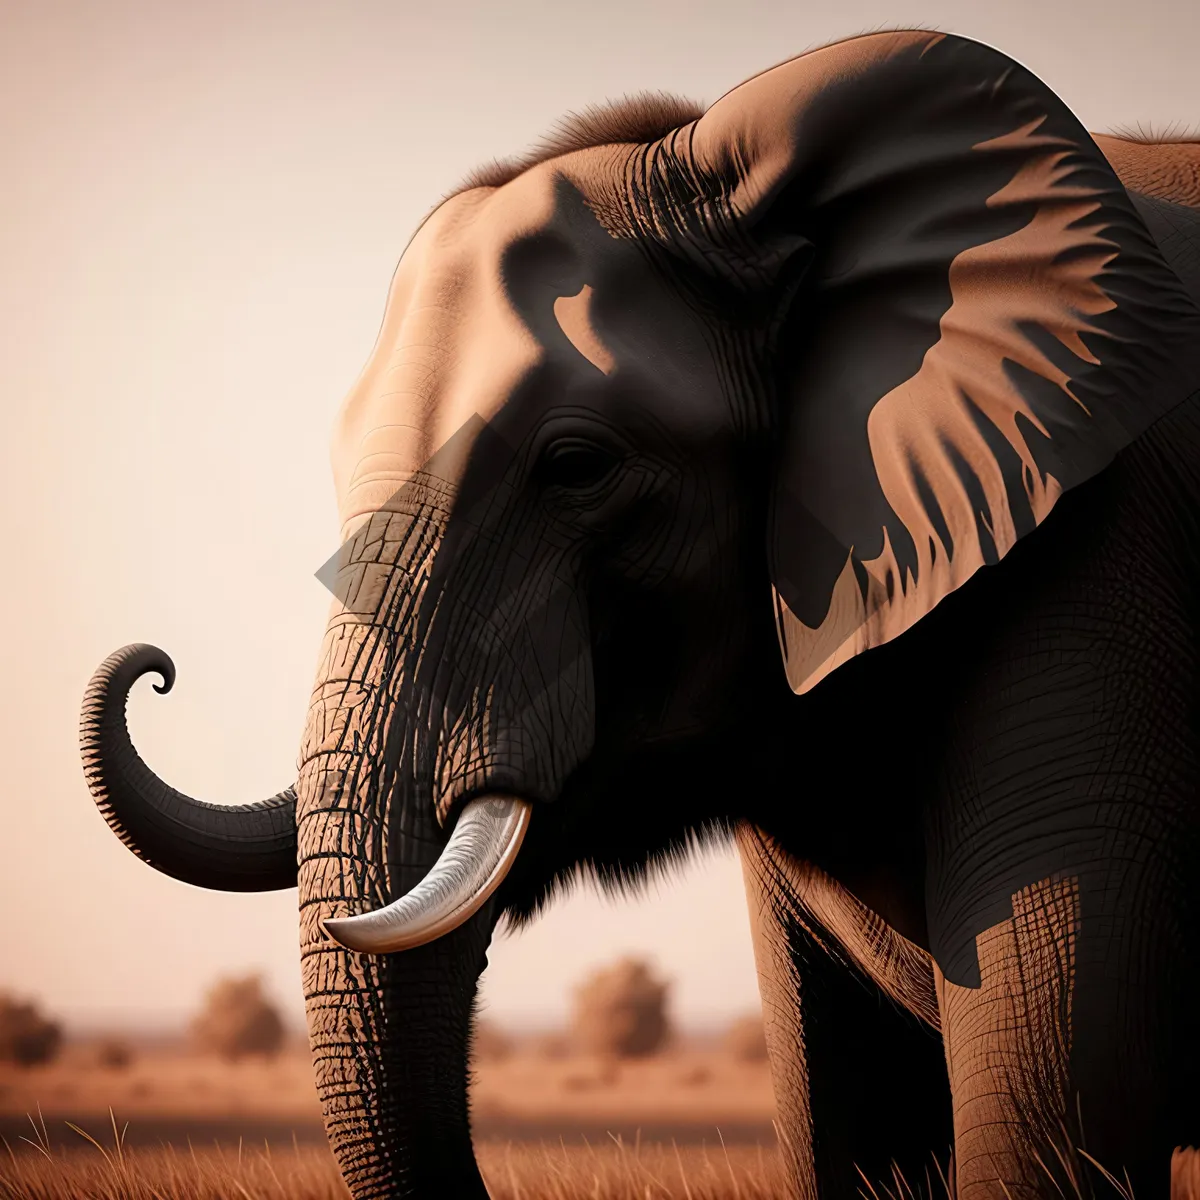 Picture of Majestic Elephant Silhouette in Wild Safari